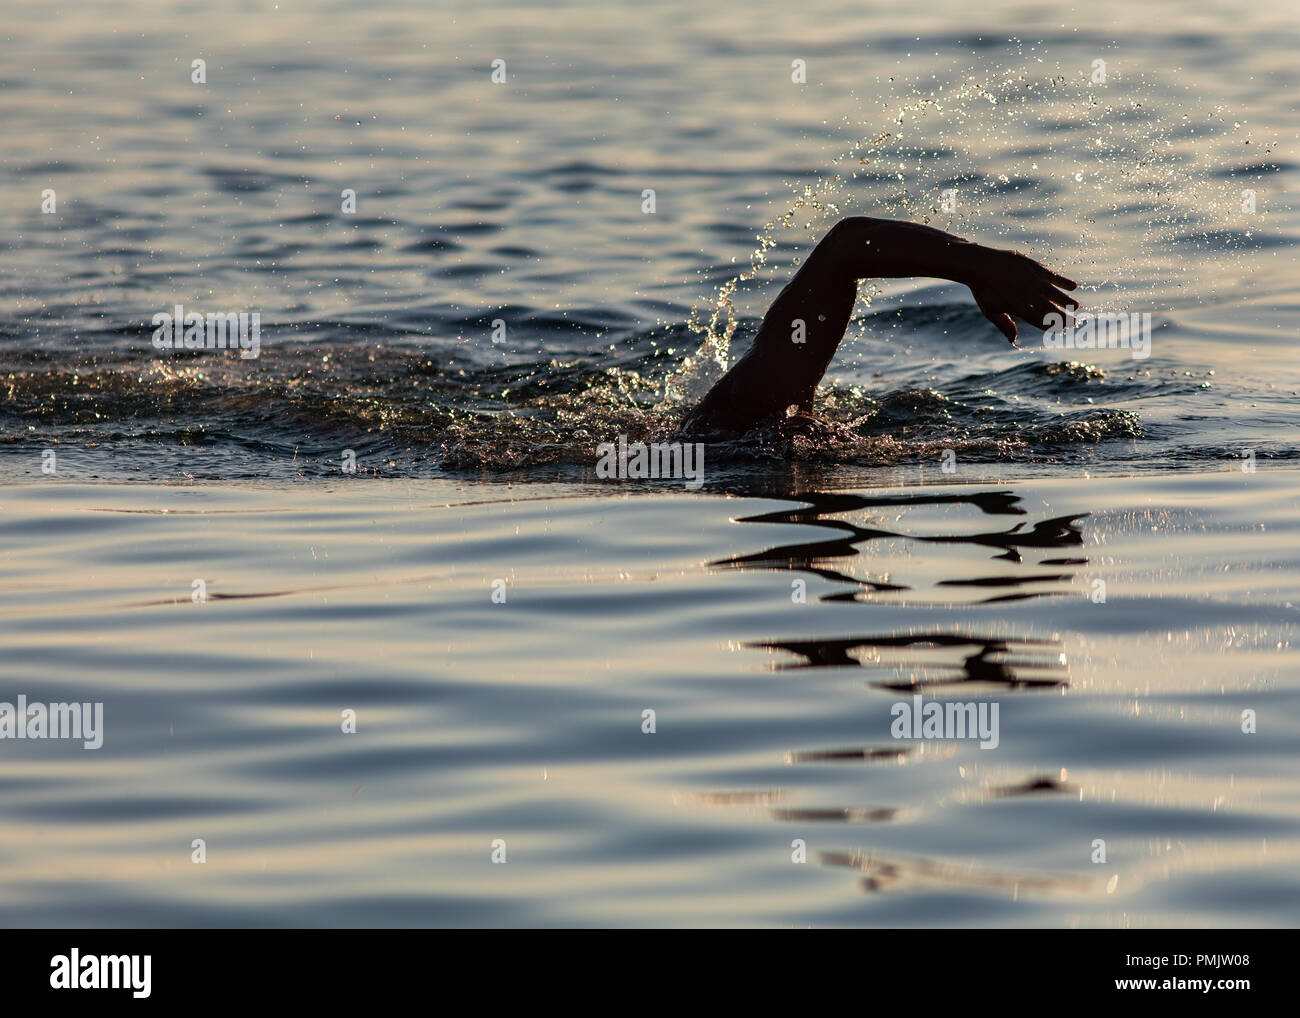 Nuotatore mano sopra la superficie dell'acqua Foto Stock